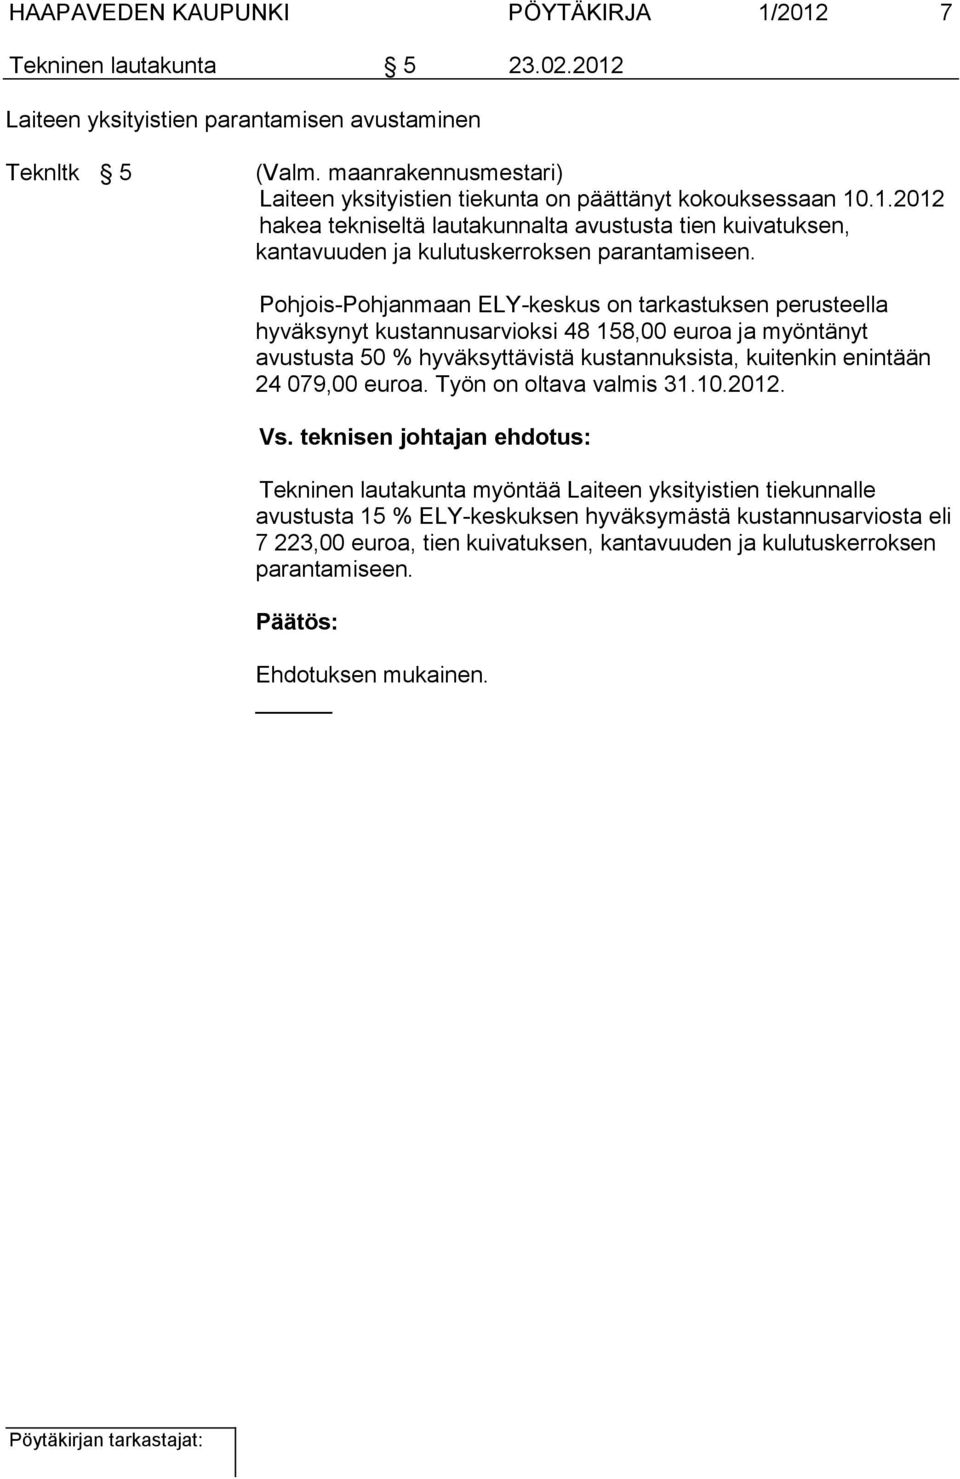 Pohjois-Pohjanmaan ELY-keskus on tarkastuksen perusteella hyväksynyt kustannusarvioksi 48 158,00 euroa ja myöntänyt avustusta 50 % hyväksyttävistä kustannuksista, kuitenkin enintään 24 079,00 euroa.